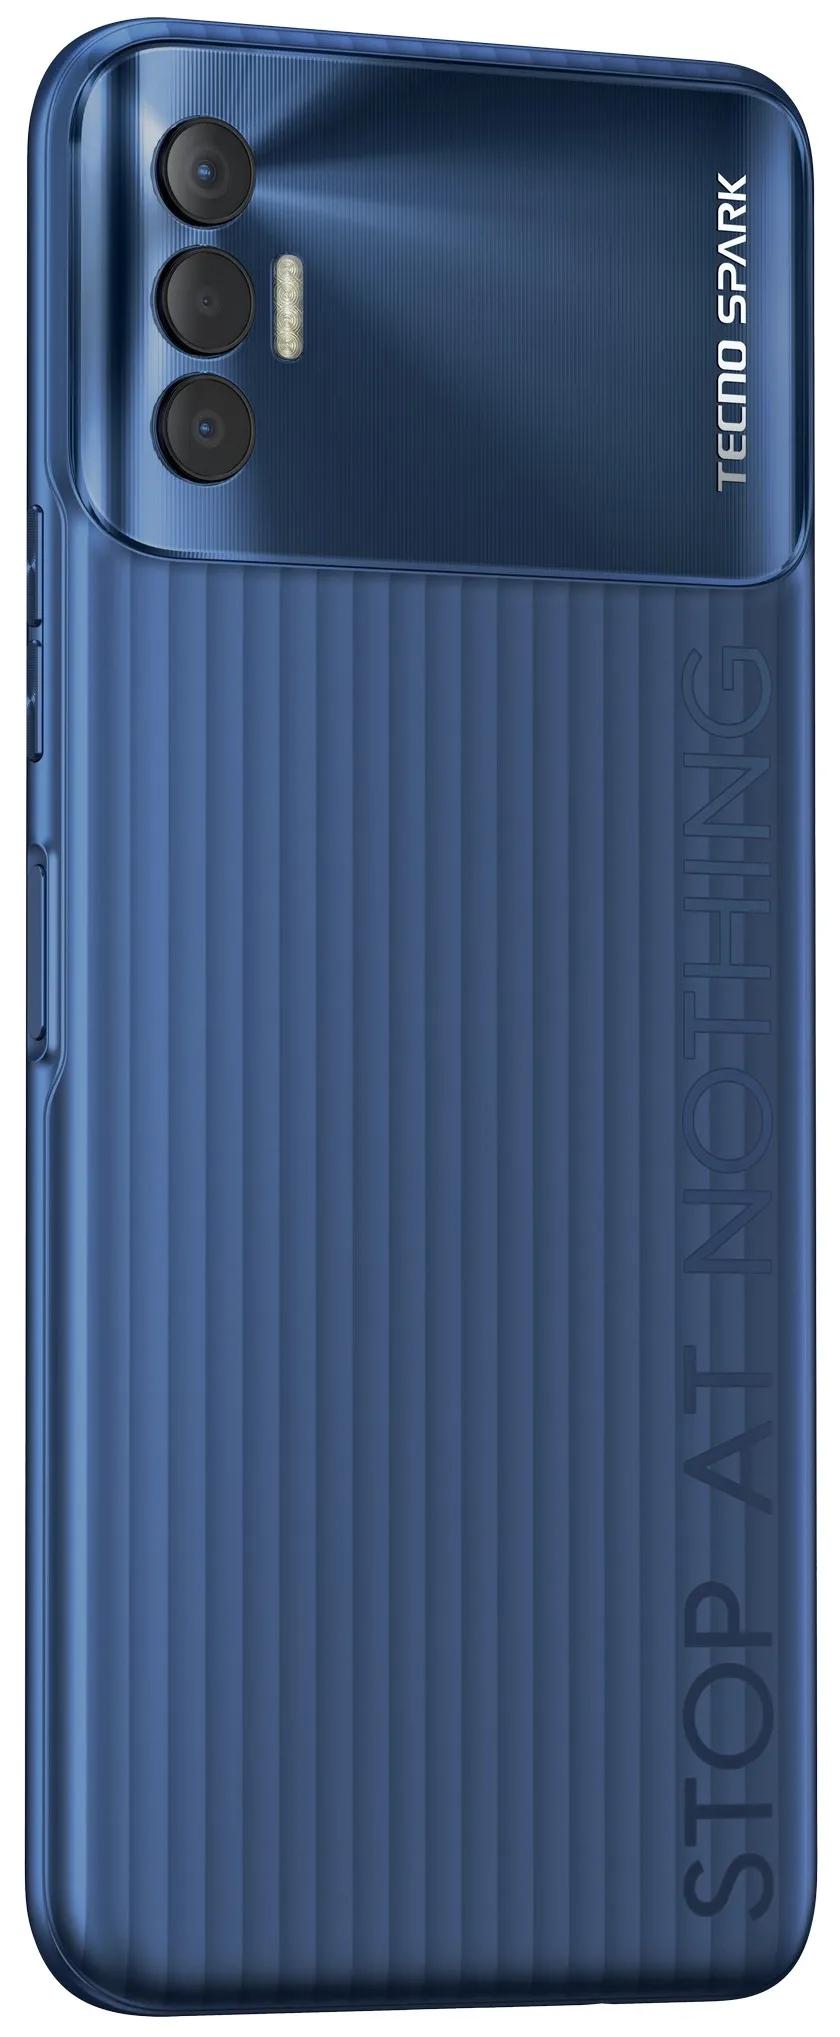 TECNO Spark 8P 4/64GB атлантический синий